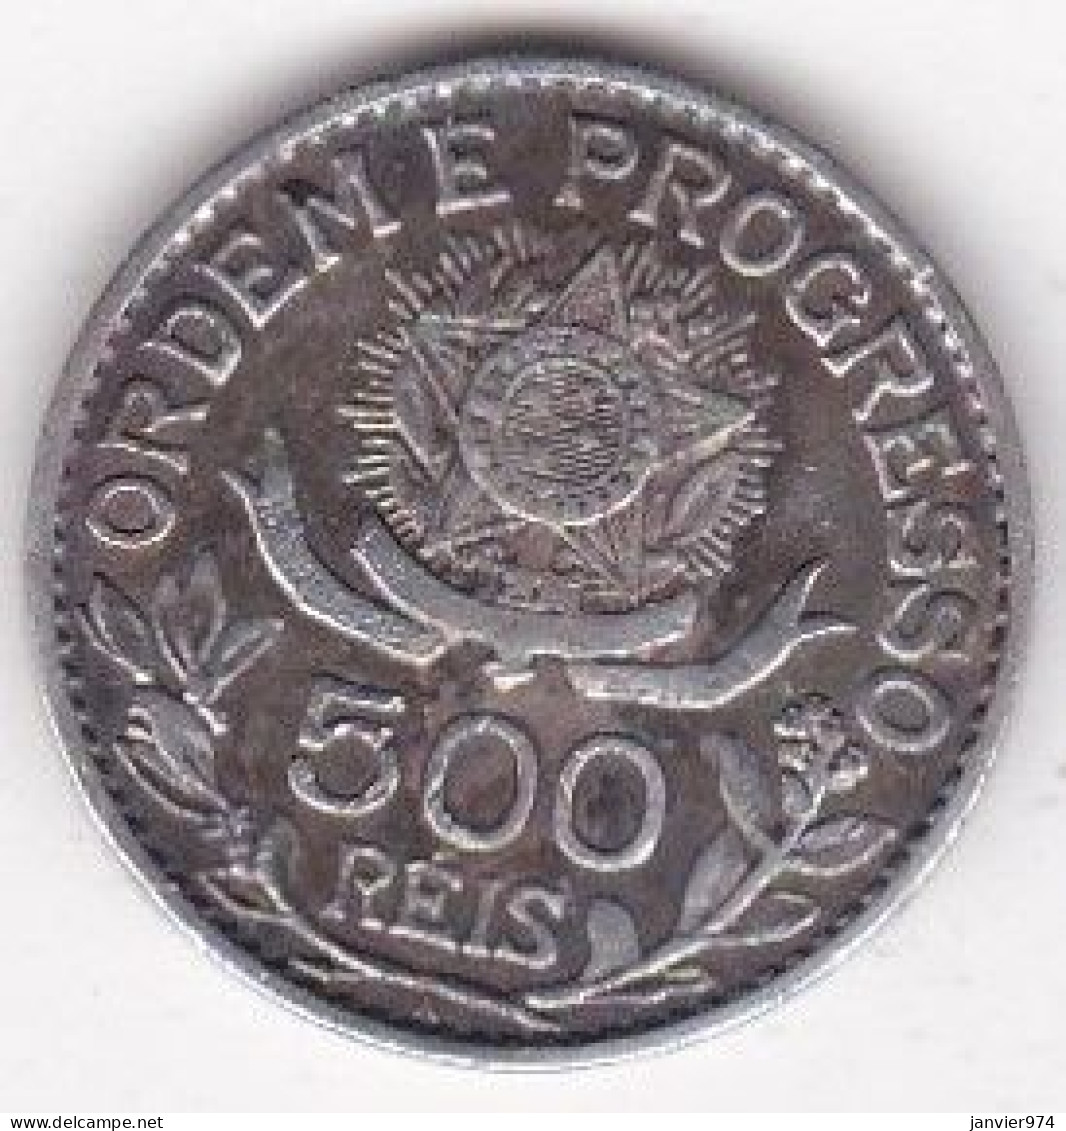 Brésil 500 Reis 1913 , En Argent , KM# 512 - Romania